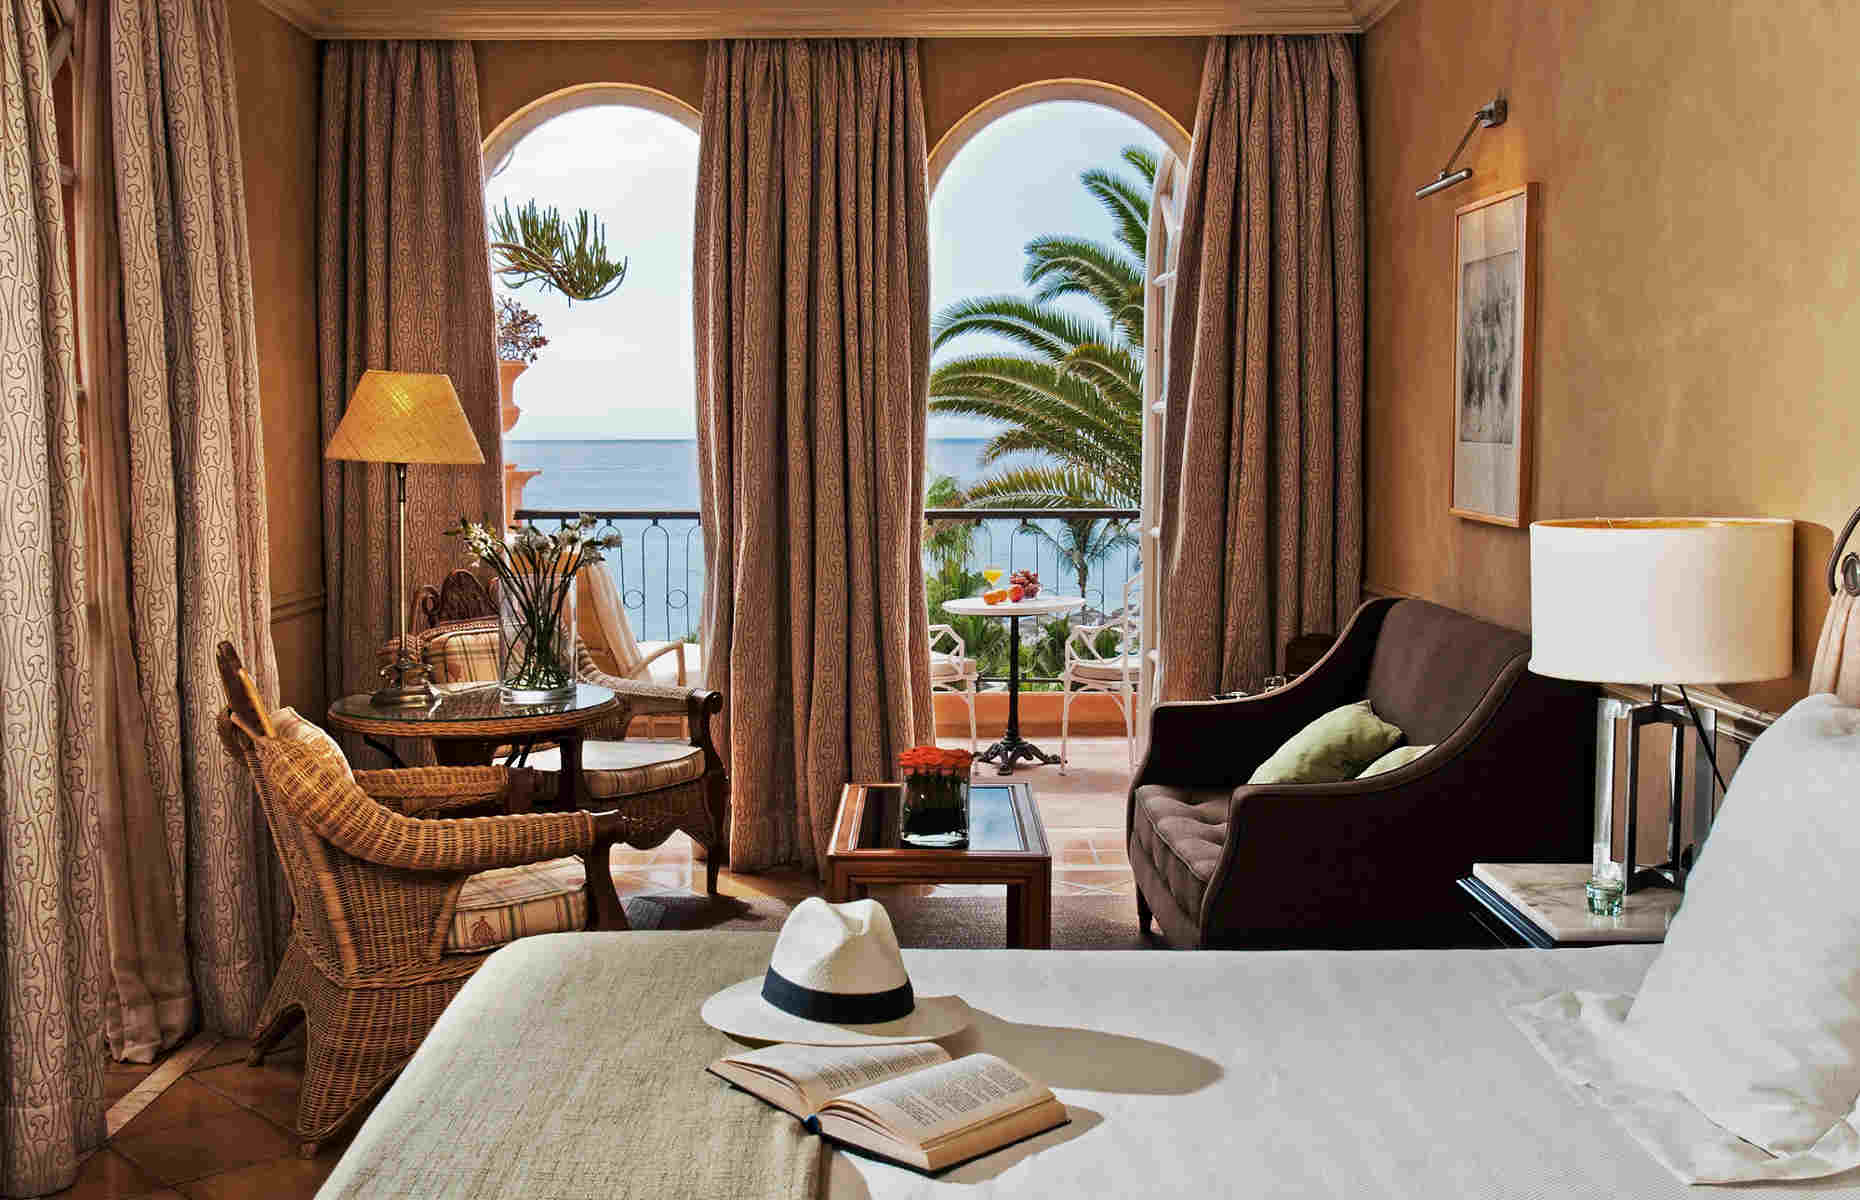 Chambre vue mer Bahia del Duque - Hôtel Tenerife, Canaries - Espagne